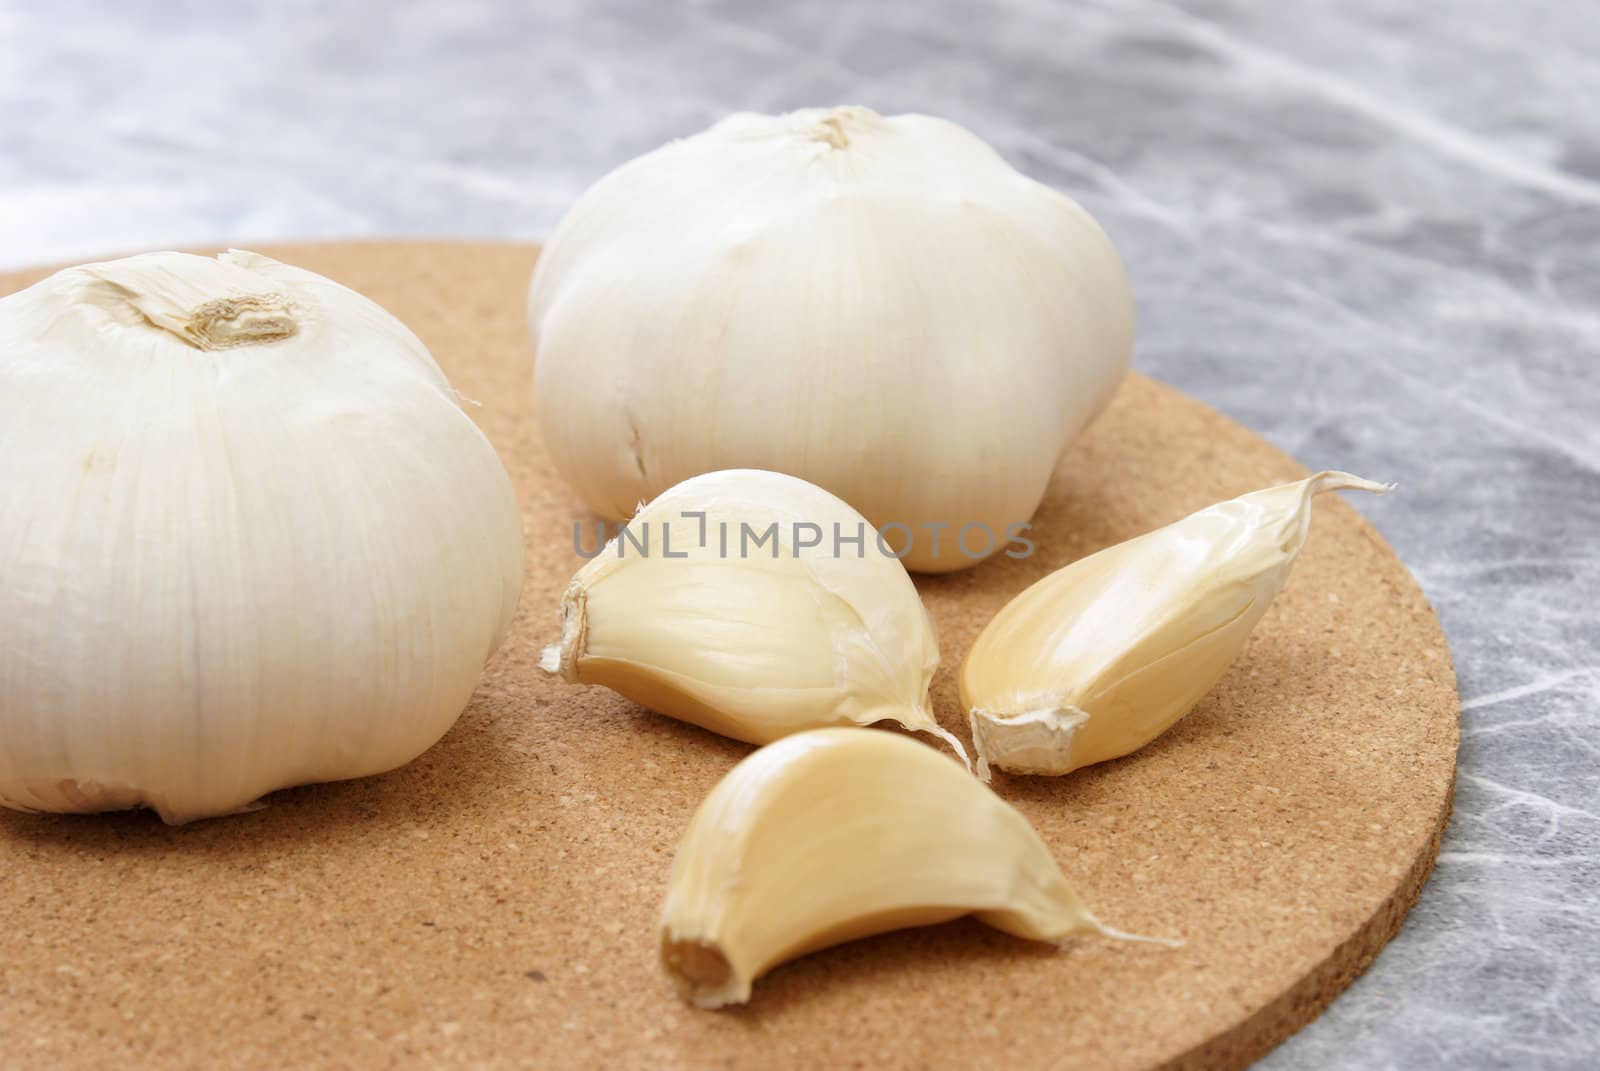 Fresh garlic is being prepared in a kitchen.